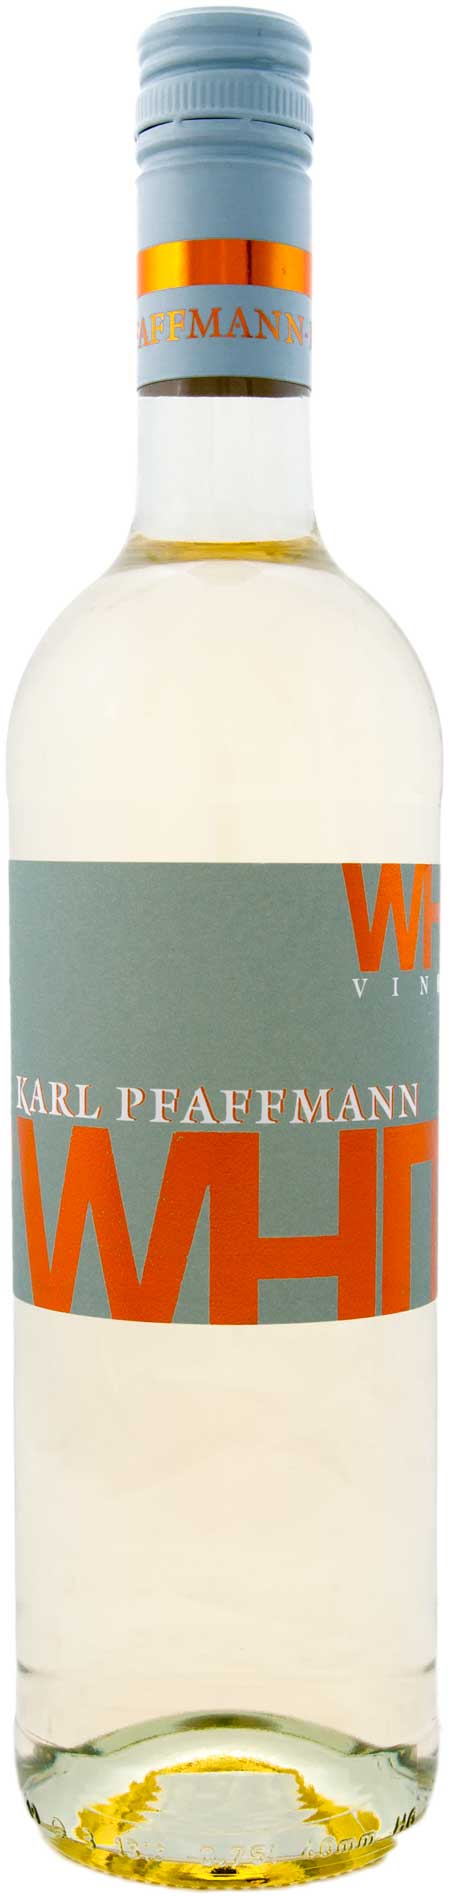 White.Vineyard - Cuvée - Qualitätswein - trocken - Weingut Karl Pfaffmann